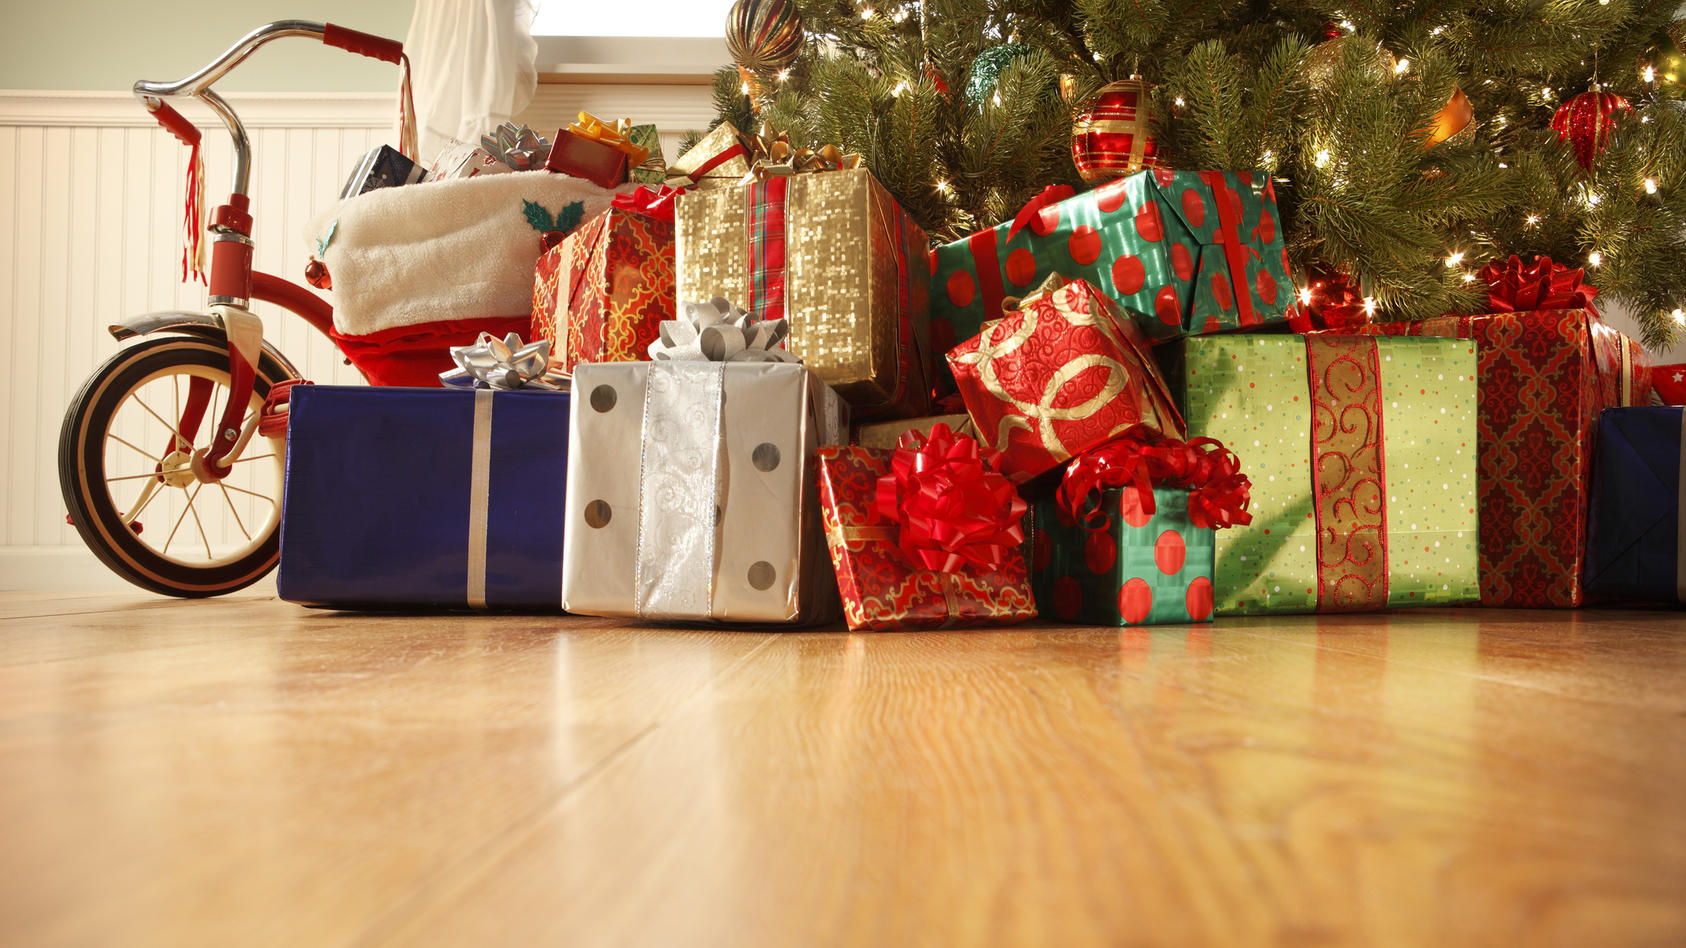 Spenden sammeln für Weihnachtsgeschenke: Okay oder ein No-Go?